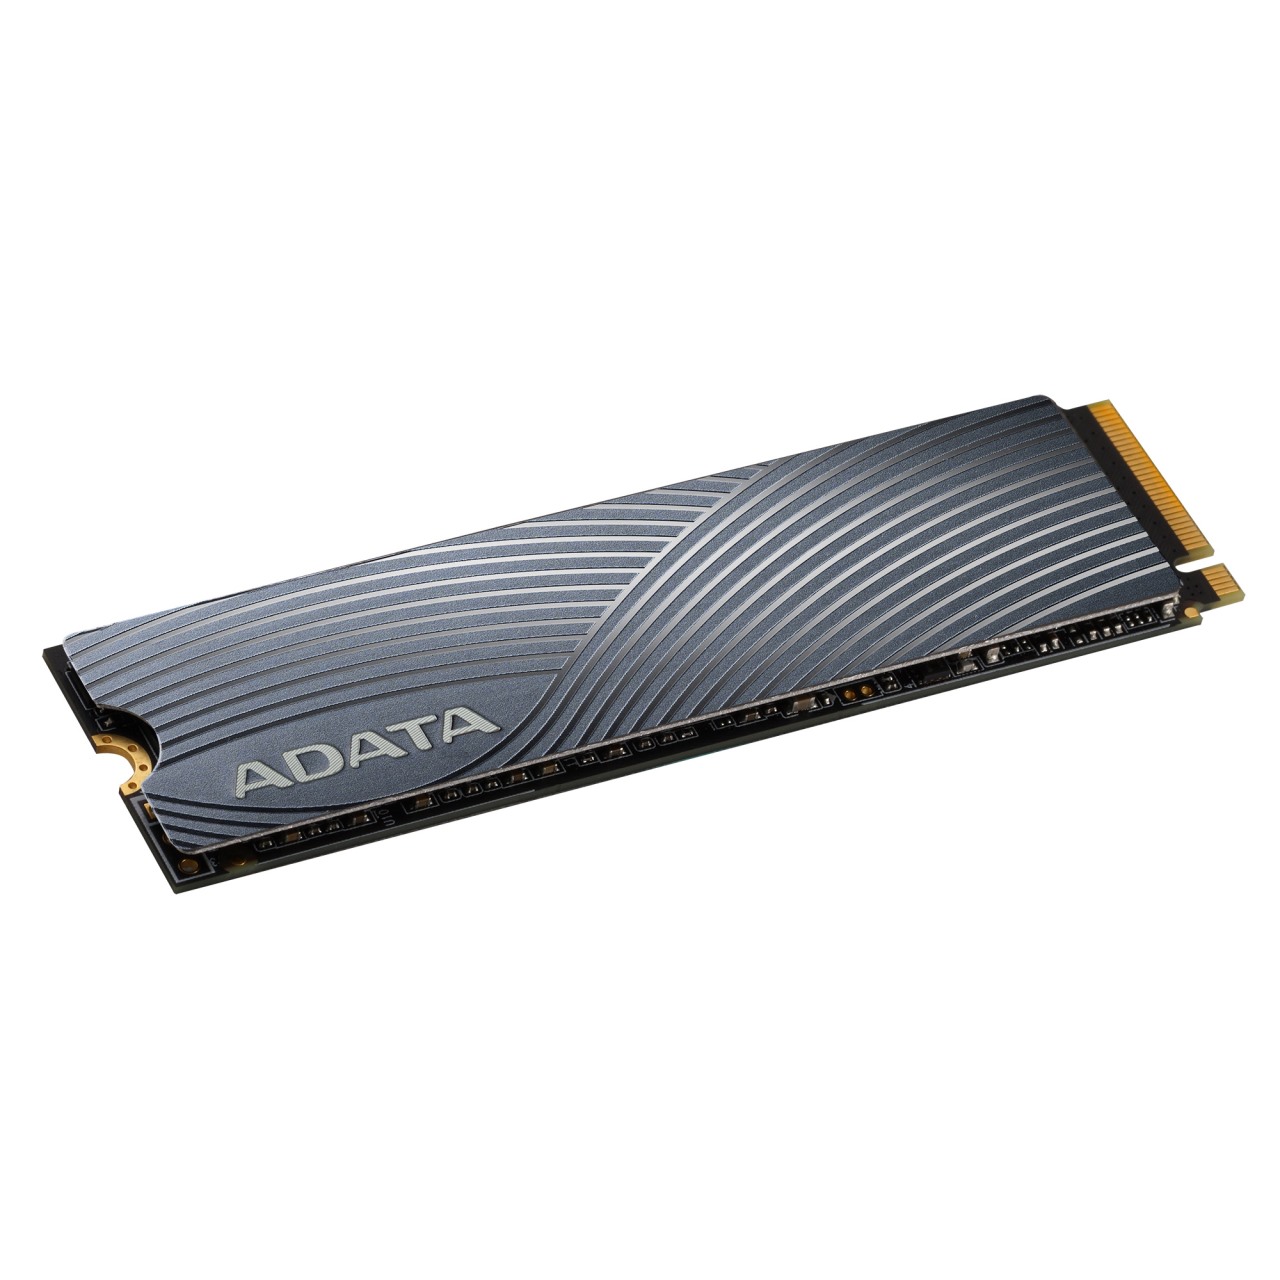 ADATA SWORDFISH PCIe M.2 250GB